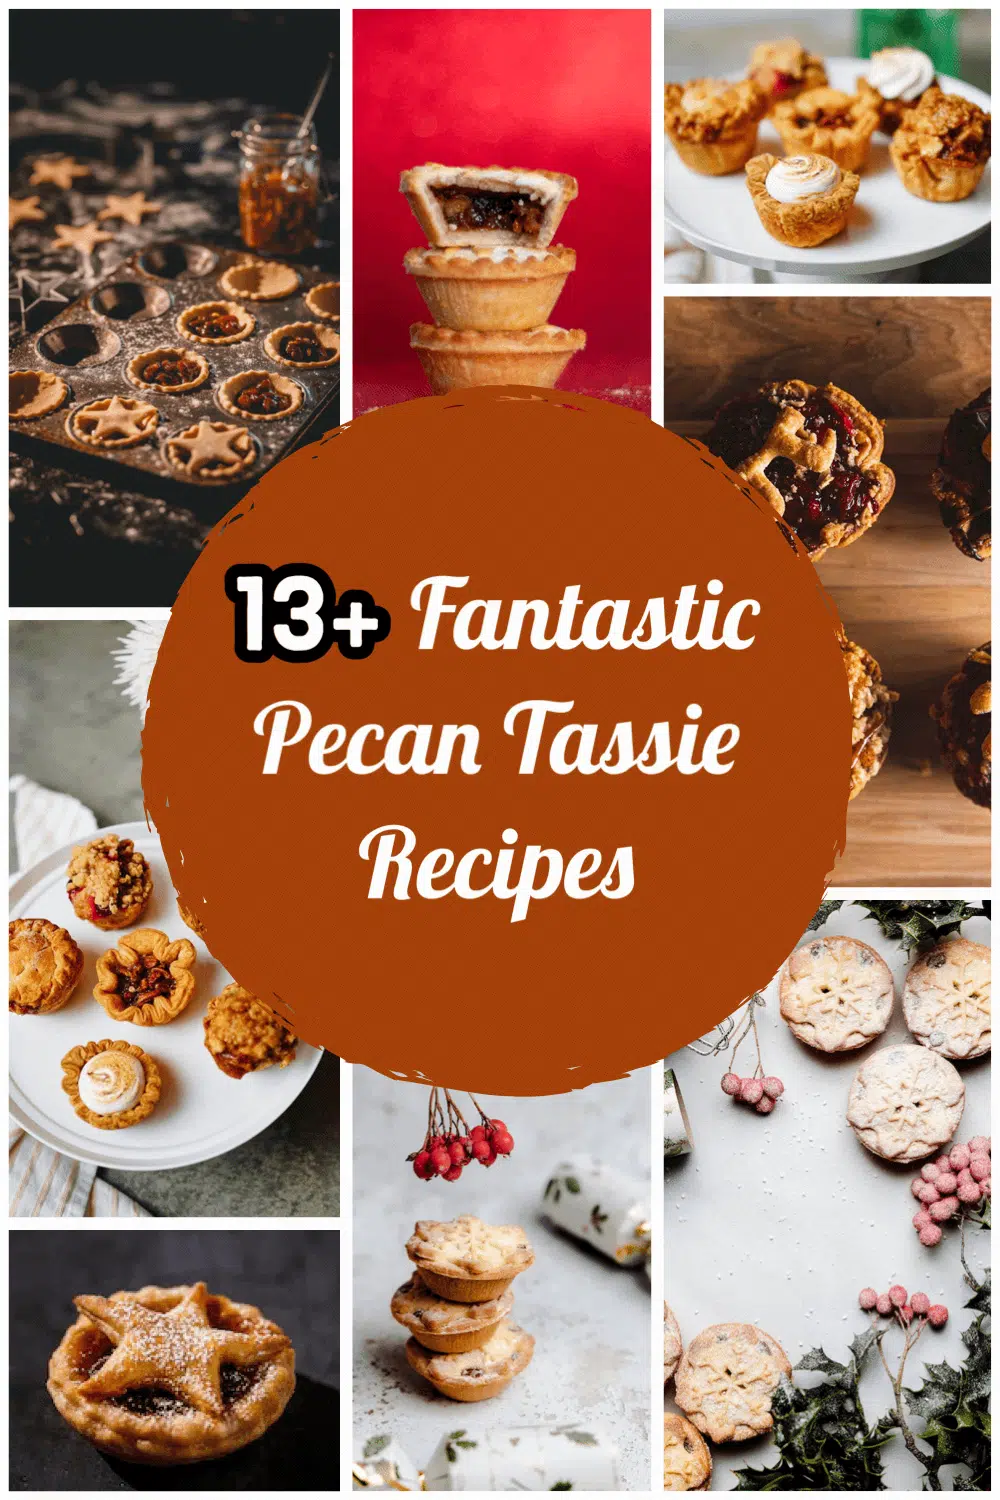 13+ Fantastic Pecan Tassie Recipes